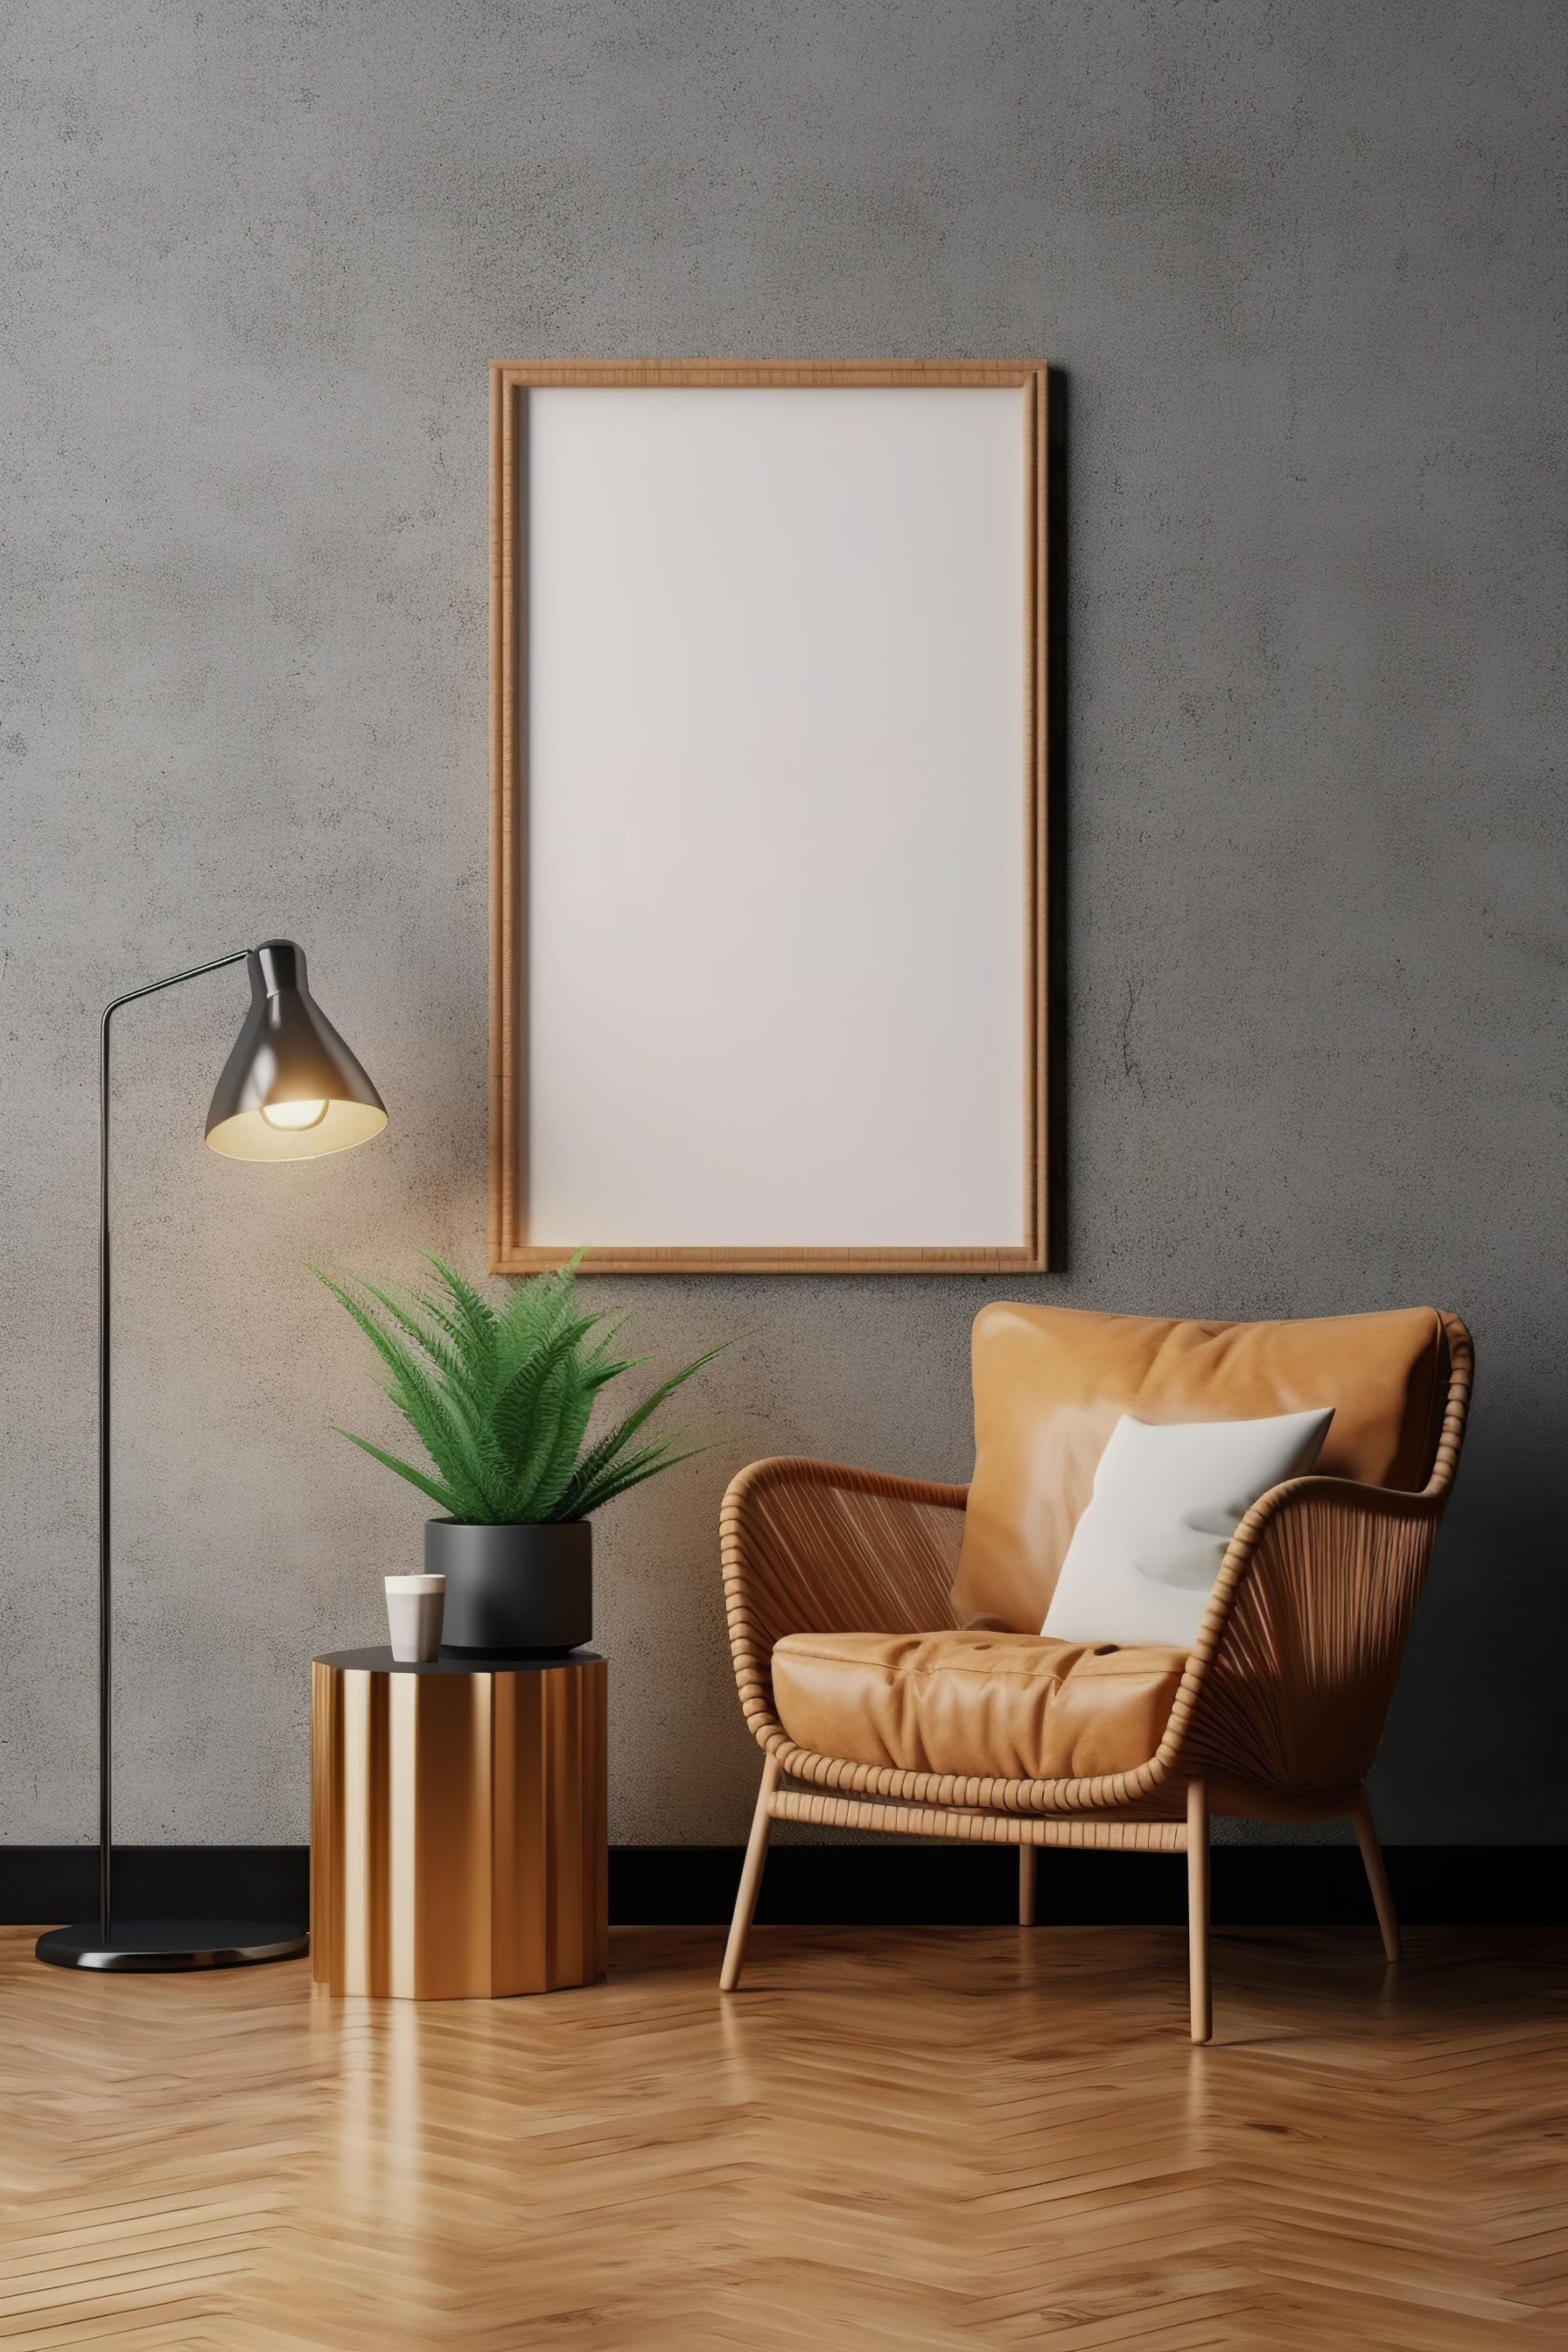 Mock up poster frame in modern interior background, living room, 3D render, 3D illustration